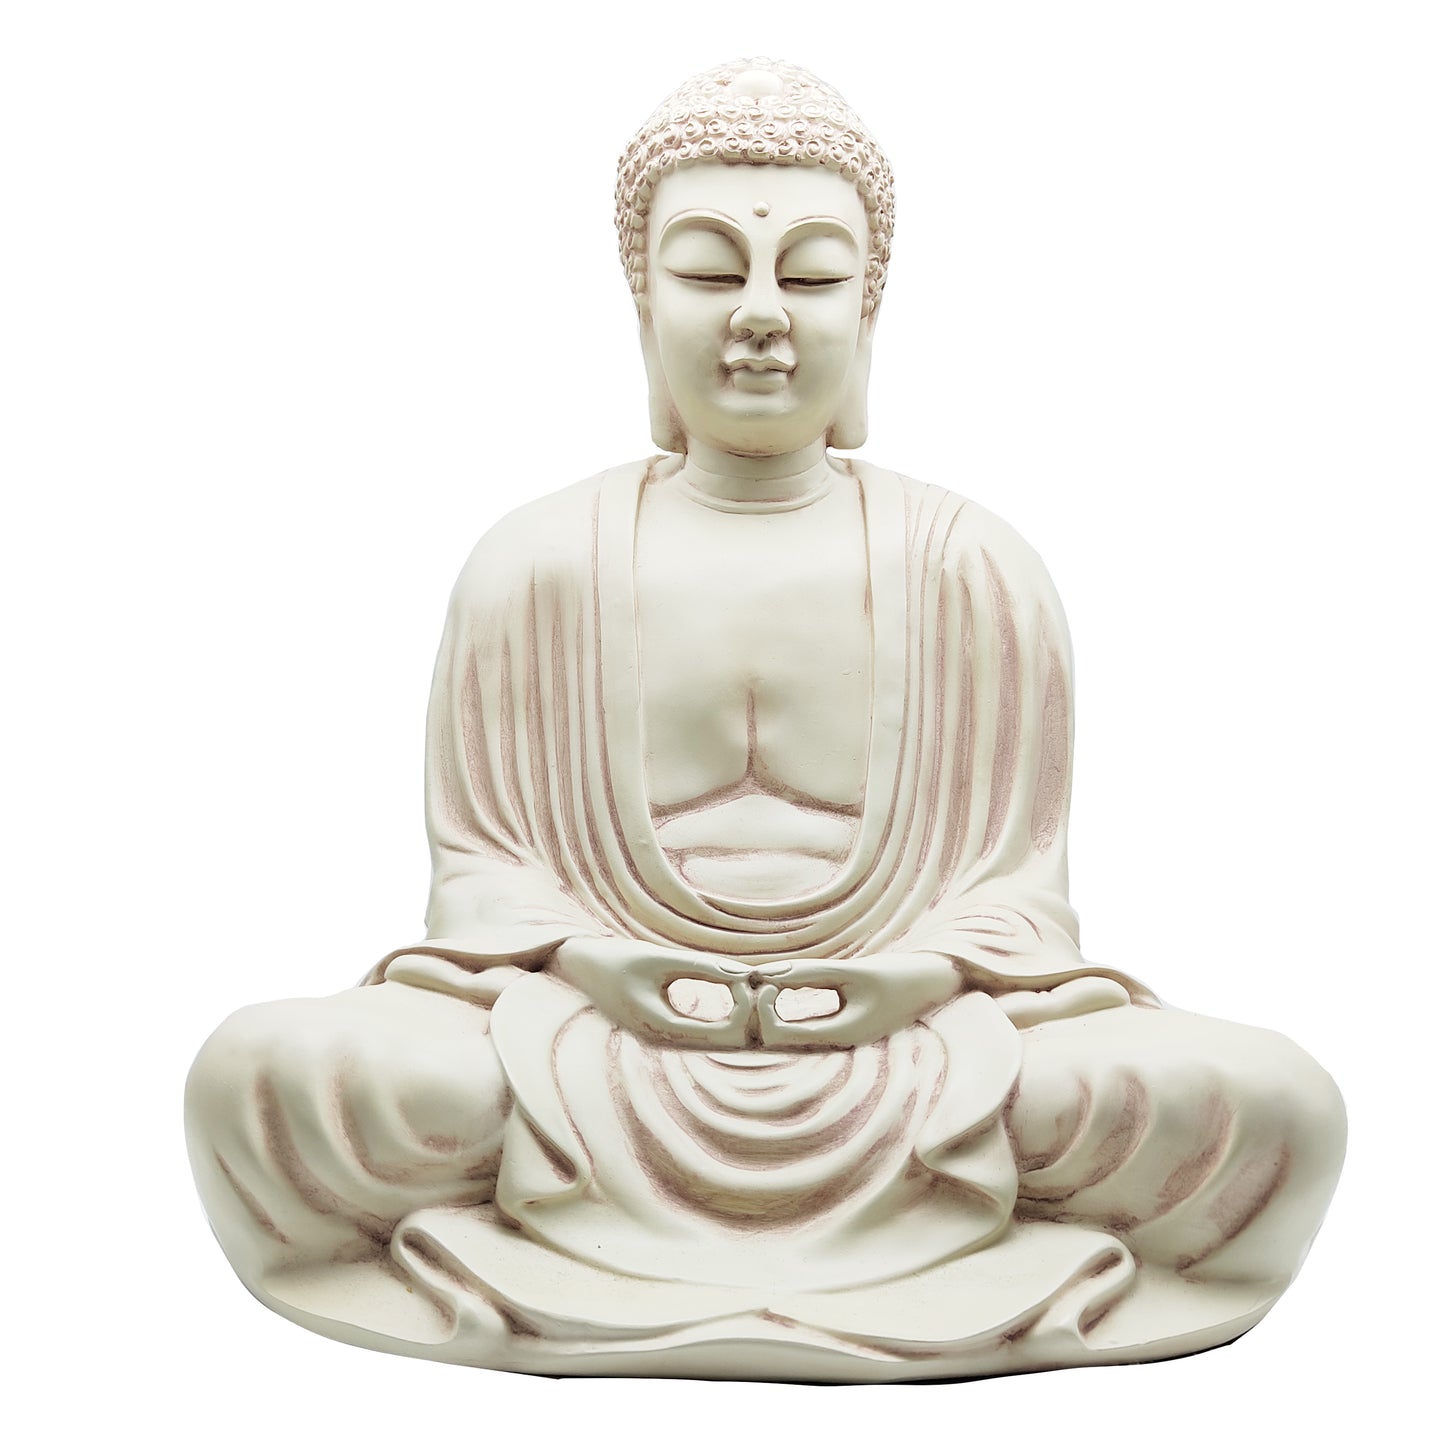 Stone Finish Meditating Dhayana Mudra Japanese Buddha Buddhism Statue 16" Tall